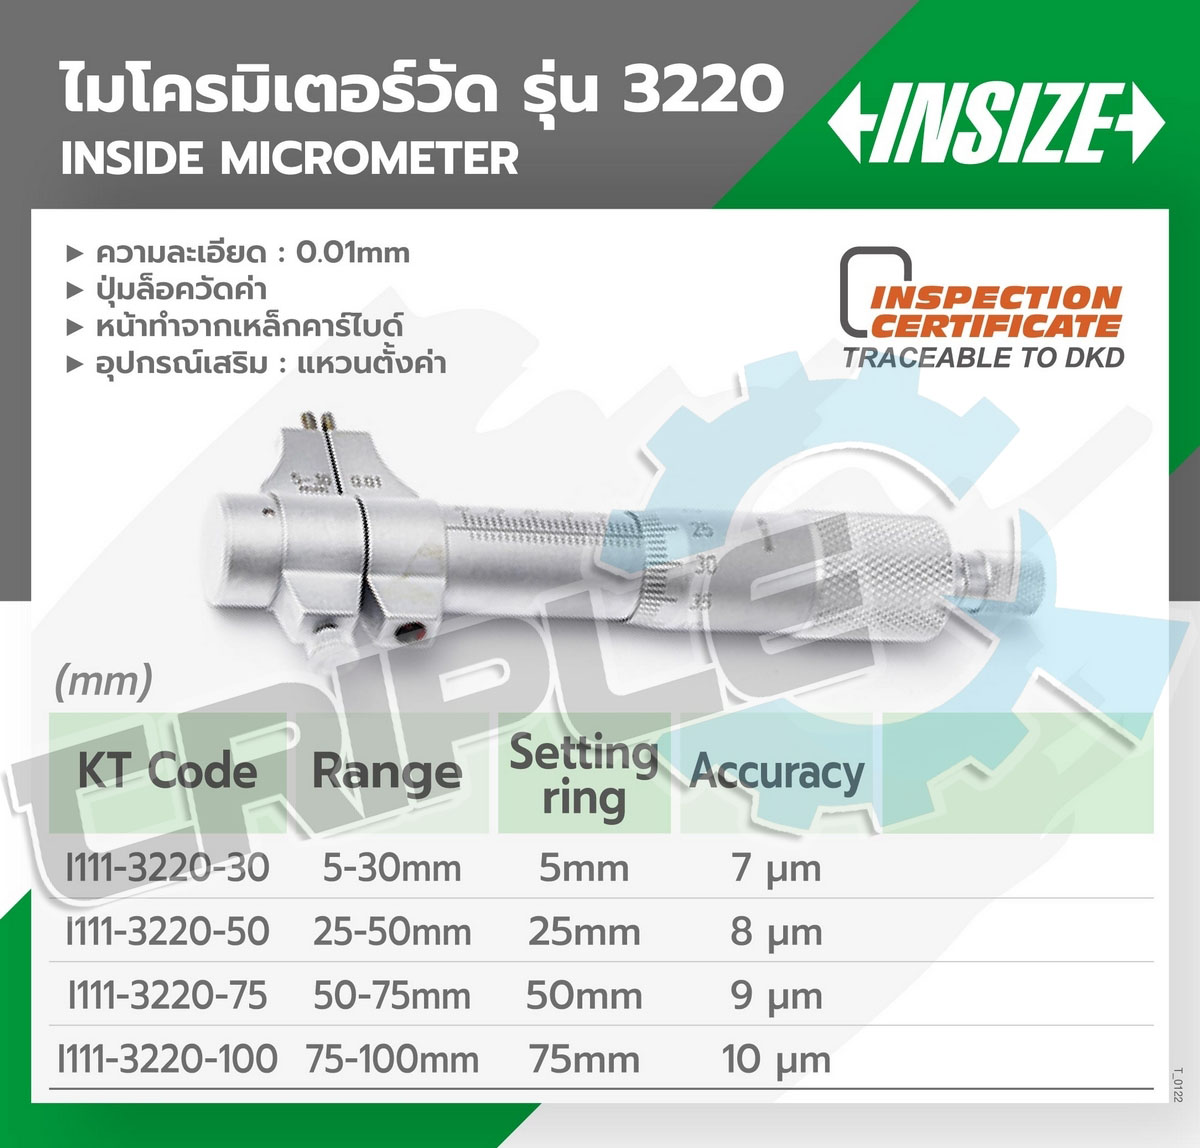 INSIZE - ไมโครมิเตอร์วัดใน (Inside Micrometer) รุ่น 3220 ขนาด 5-30 มม. ค่าความละเอียด 0.01 มม. มีจุดยึดหมุดเพื่อลอคค่าวัดให้คงที่